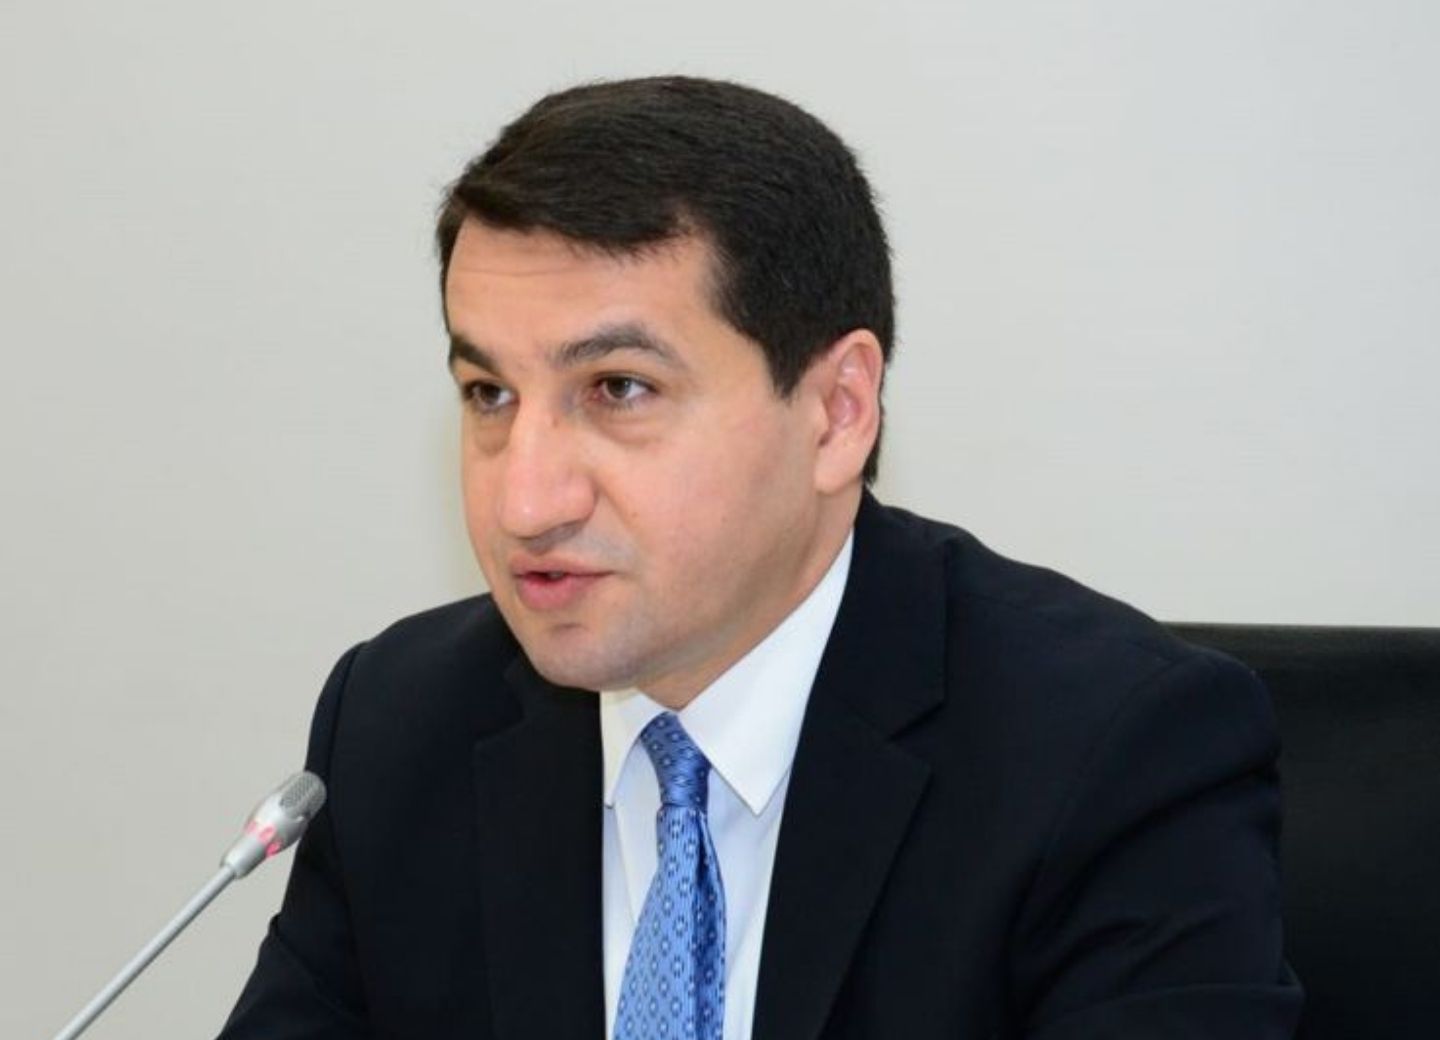 Хикмет Гаджиев в интервью Al Jazeera: «Мы не воюем с гражданским населением, и в этом разница между Арменией и Азербайджаном»